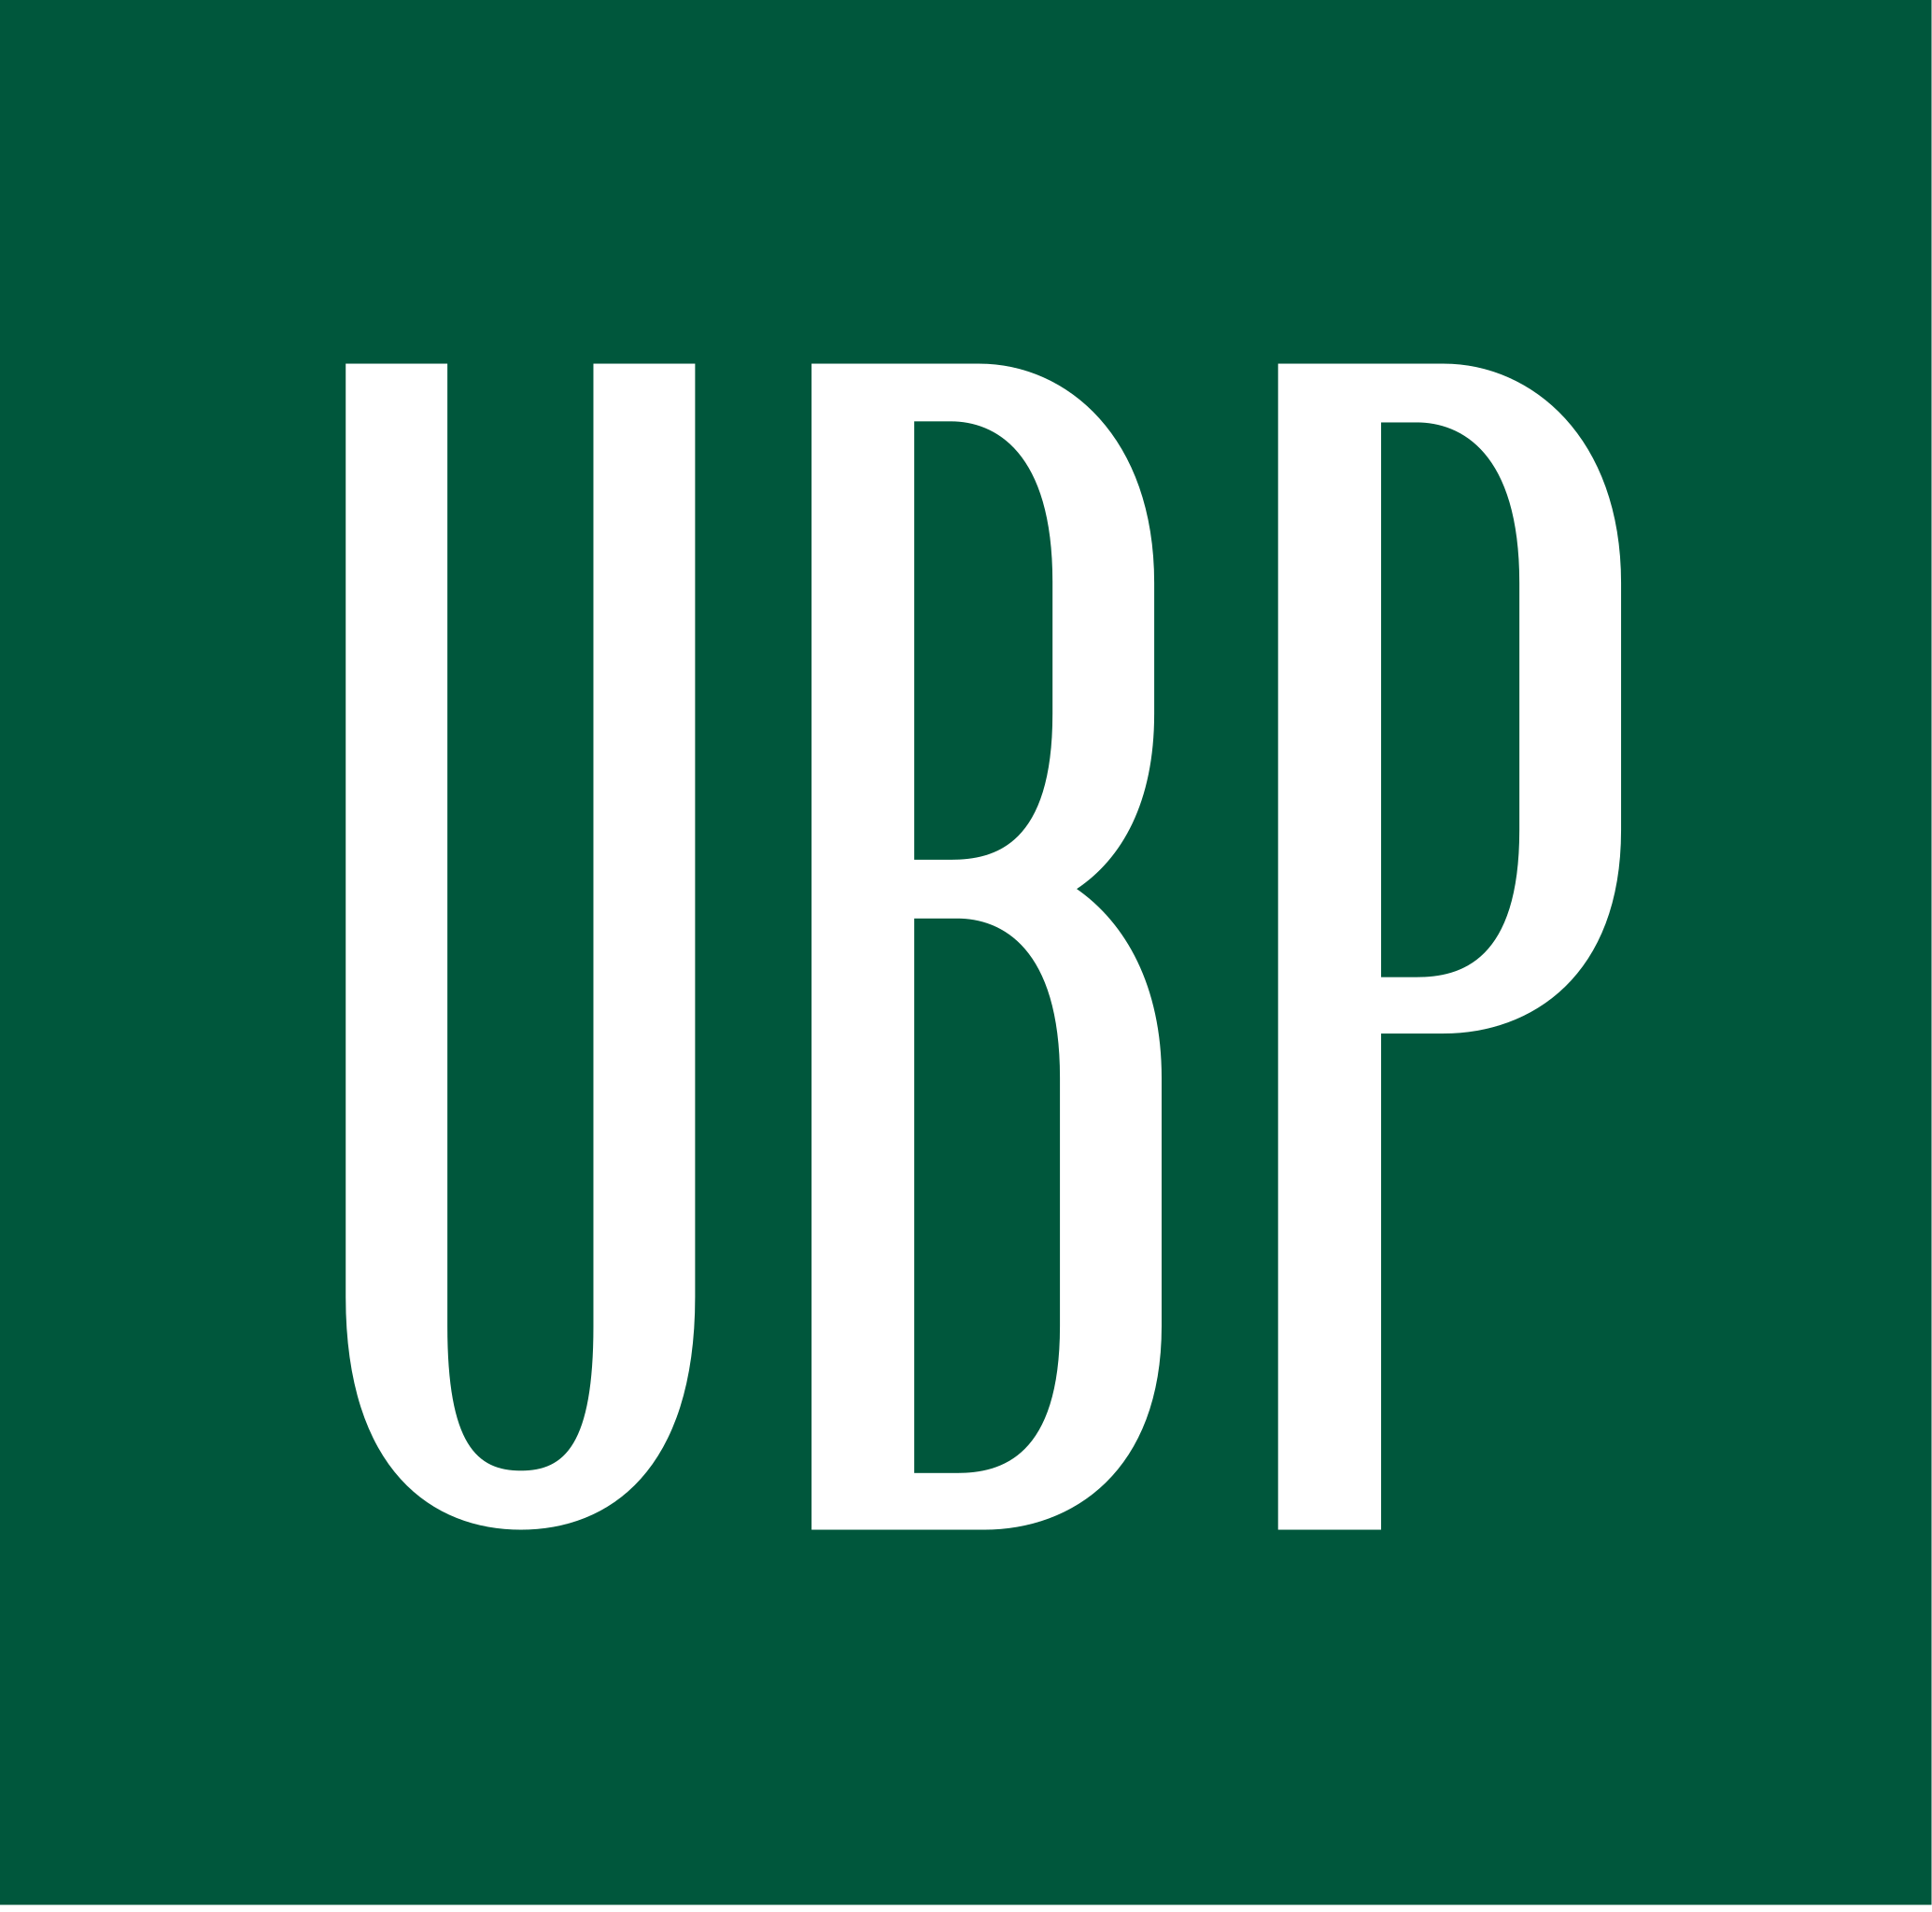 Union_Bancaire_Privée_logo.svg